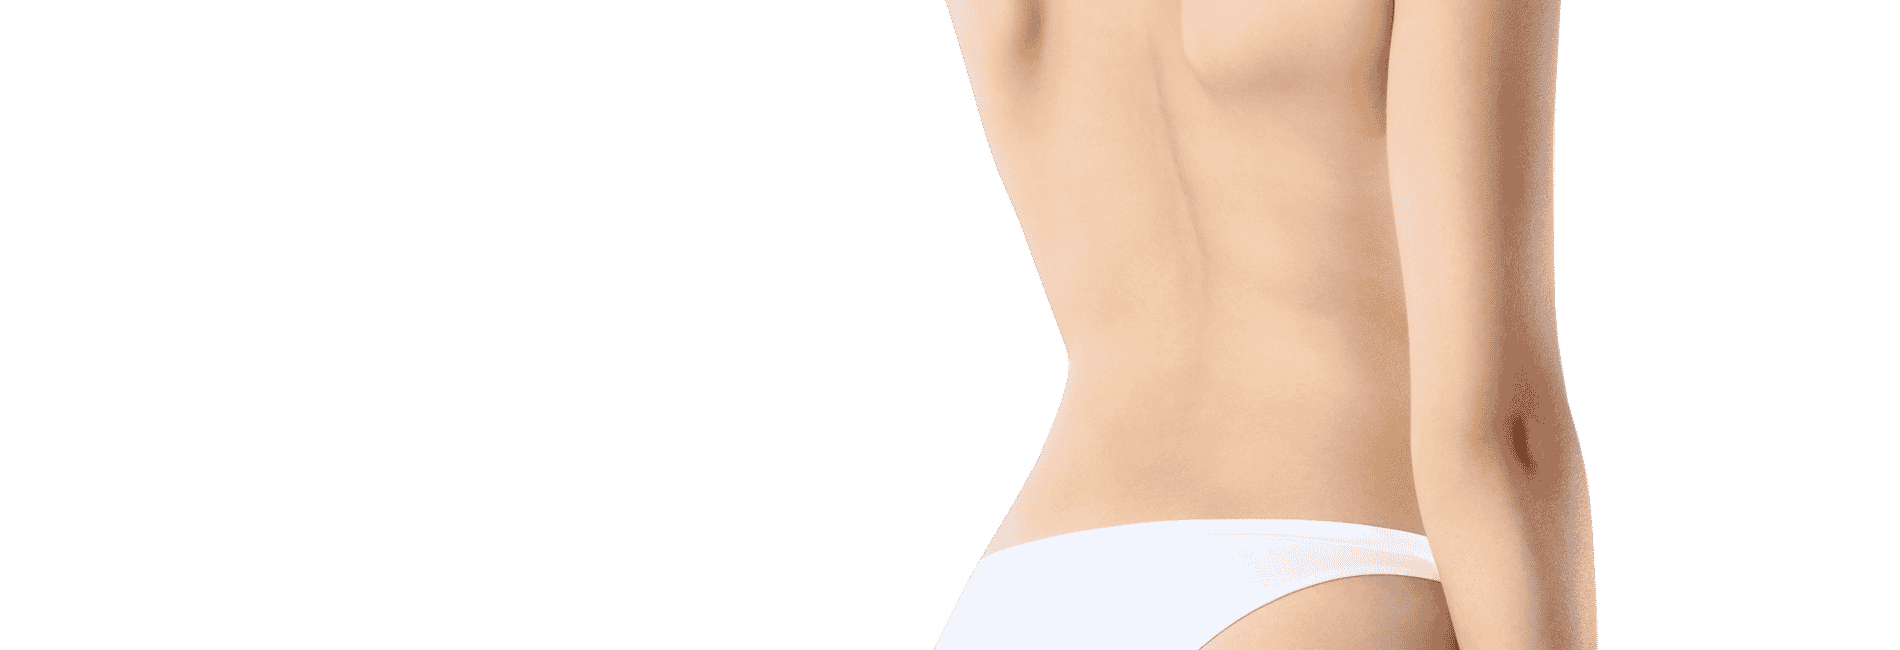 Liposuzione schiena: in cosa consiste?